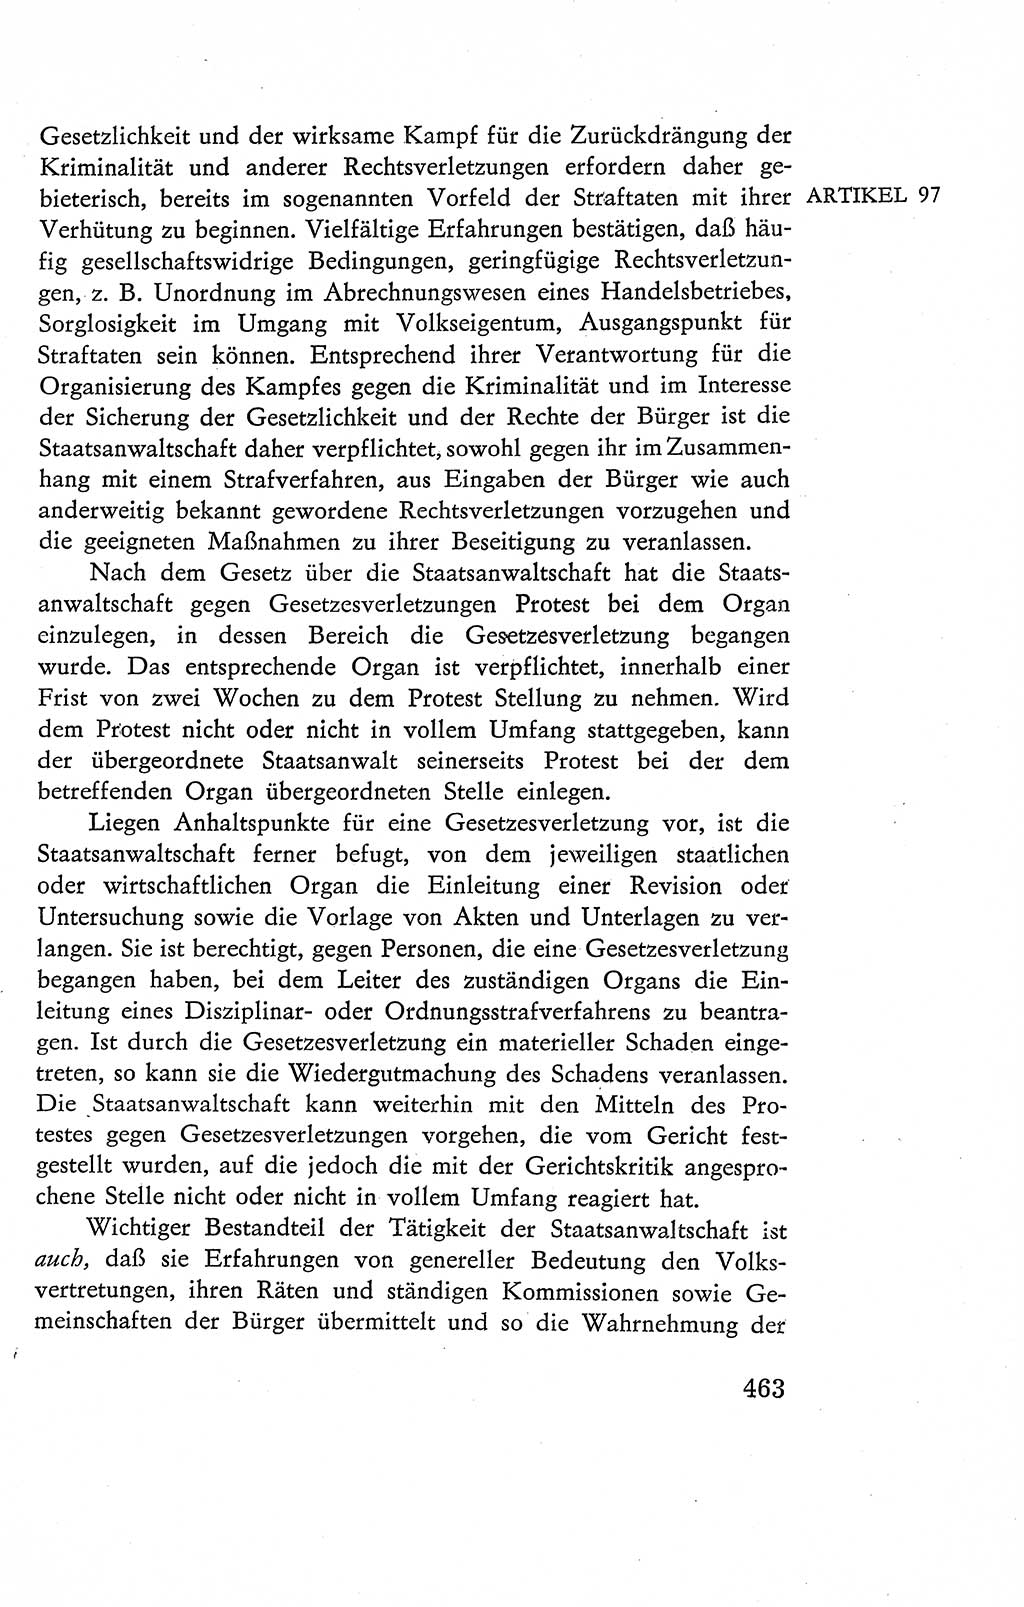 Verfassung der Deutschen Demokratischen Republik (DDR), Dokumente, Kommentar 1969, Band 2, Seite 463 (Verf. DDR Dok. Komm. 1969, Bd. 2, S. 463)